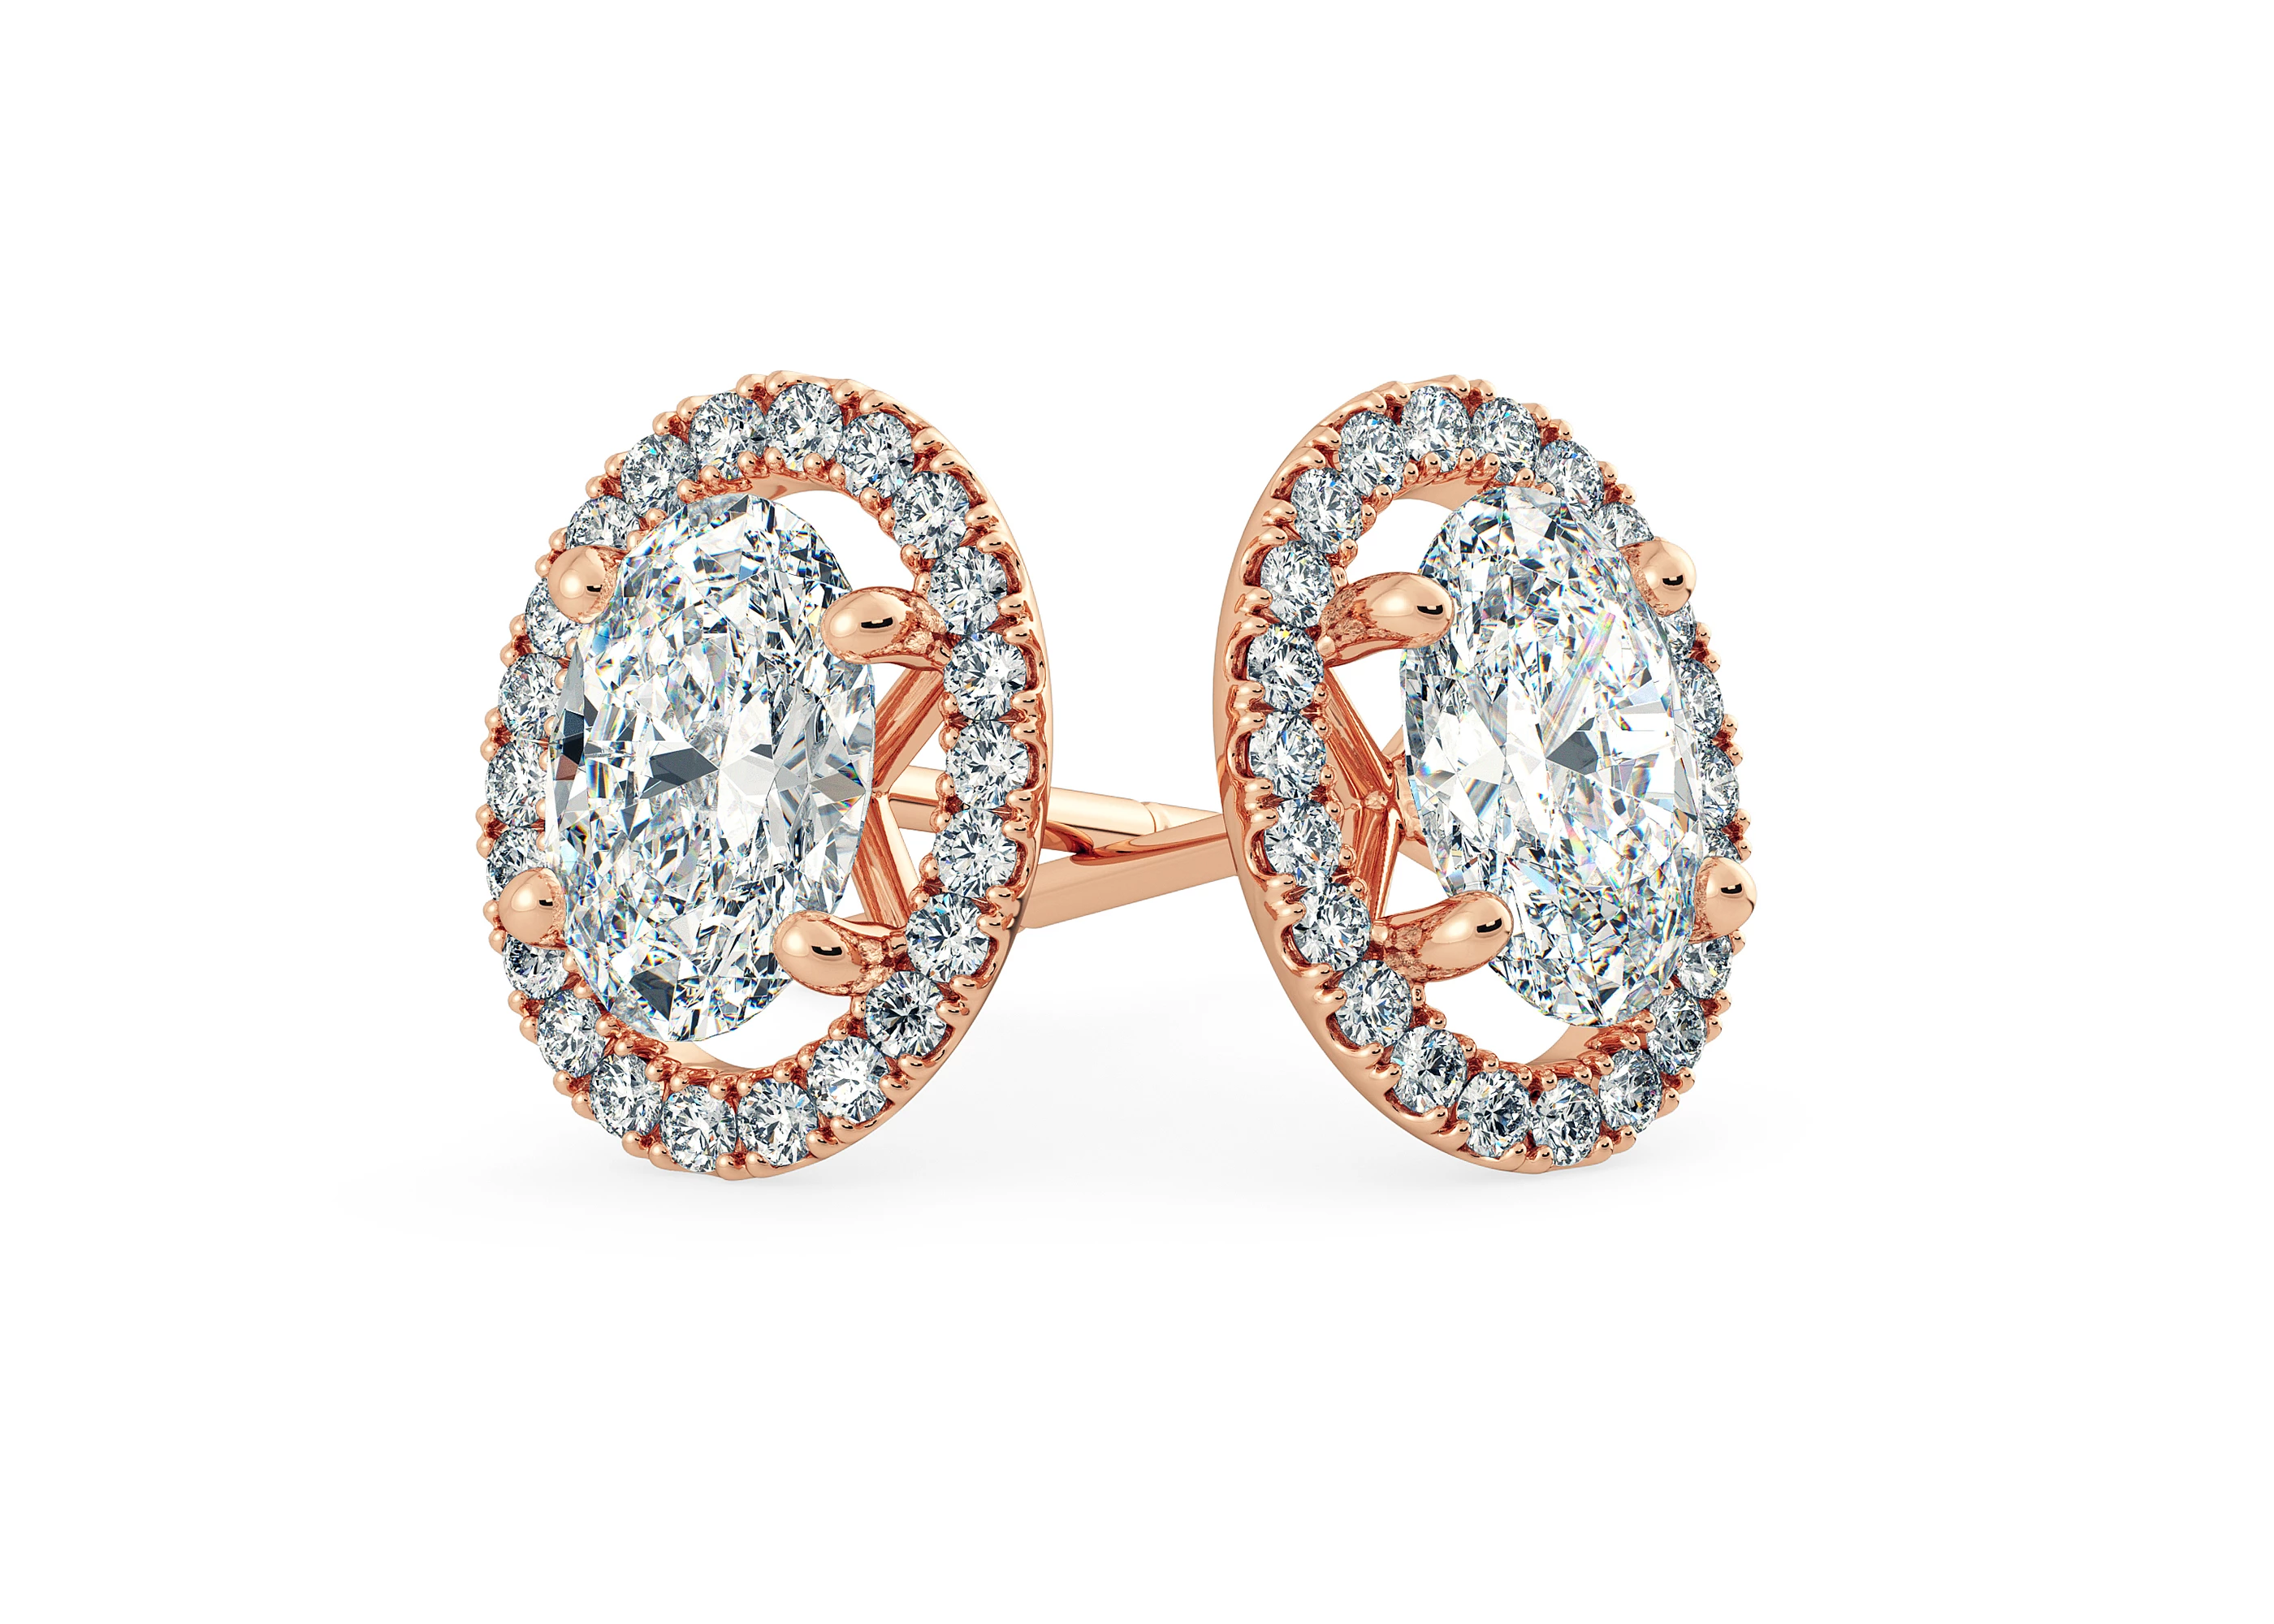 Bijou Oval Diamond Stud Earrings in 18K Rose Gold with Alpha Backs